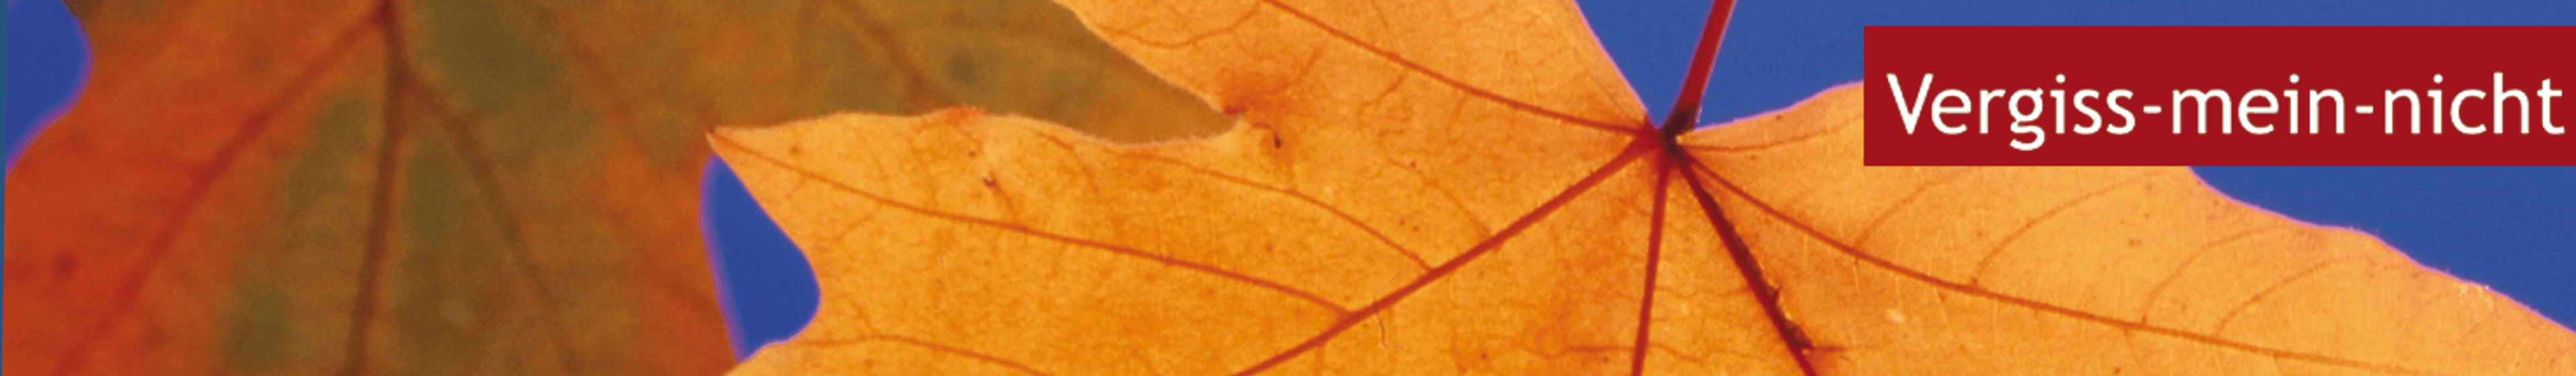 demenz-rote-kopfbild-okapia-